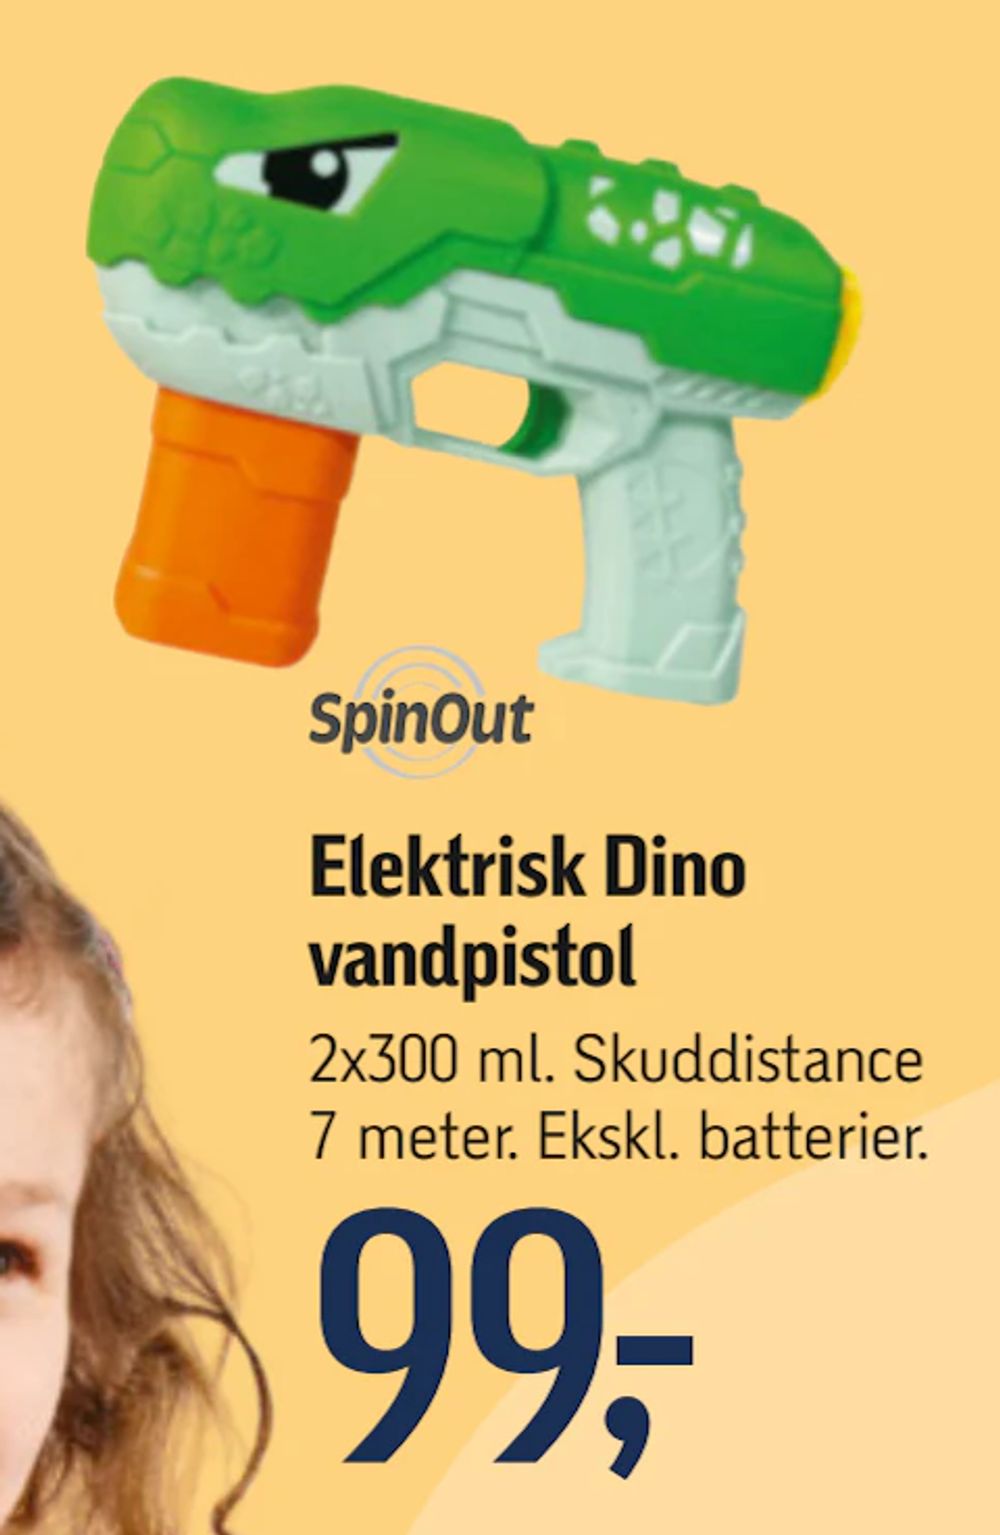 Tilbud på Elektrisk Dino vandpistol fra føtex til 99 kr.